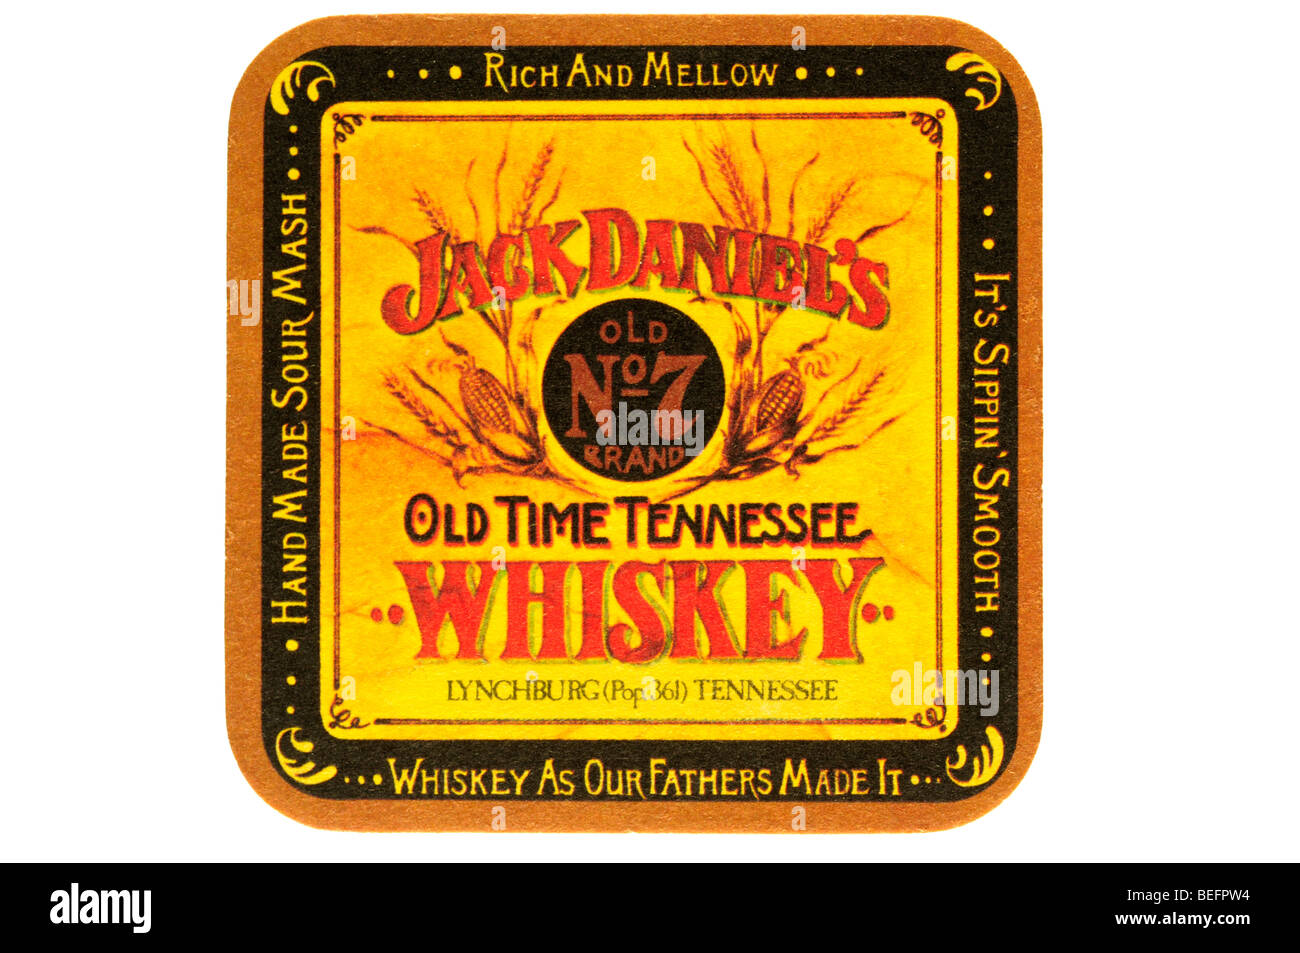 Jack Daniels vecchia n. 7 brand vecchio tempo Tennessee whiskey lynchburg pop 361 Tennessee whiskey come i nostri padri hanno reso ricco e mello Foto Stock